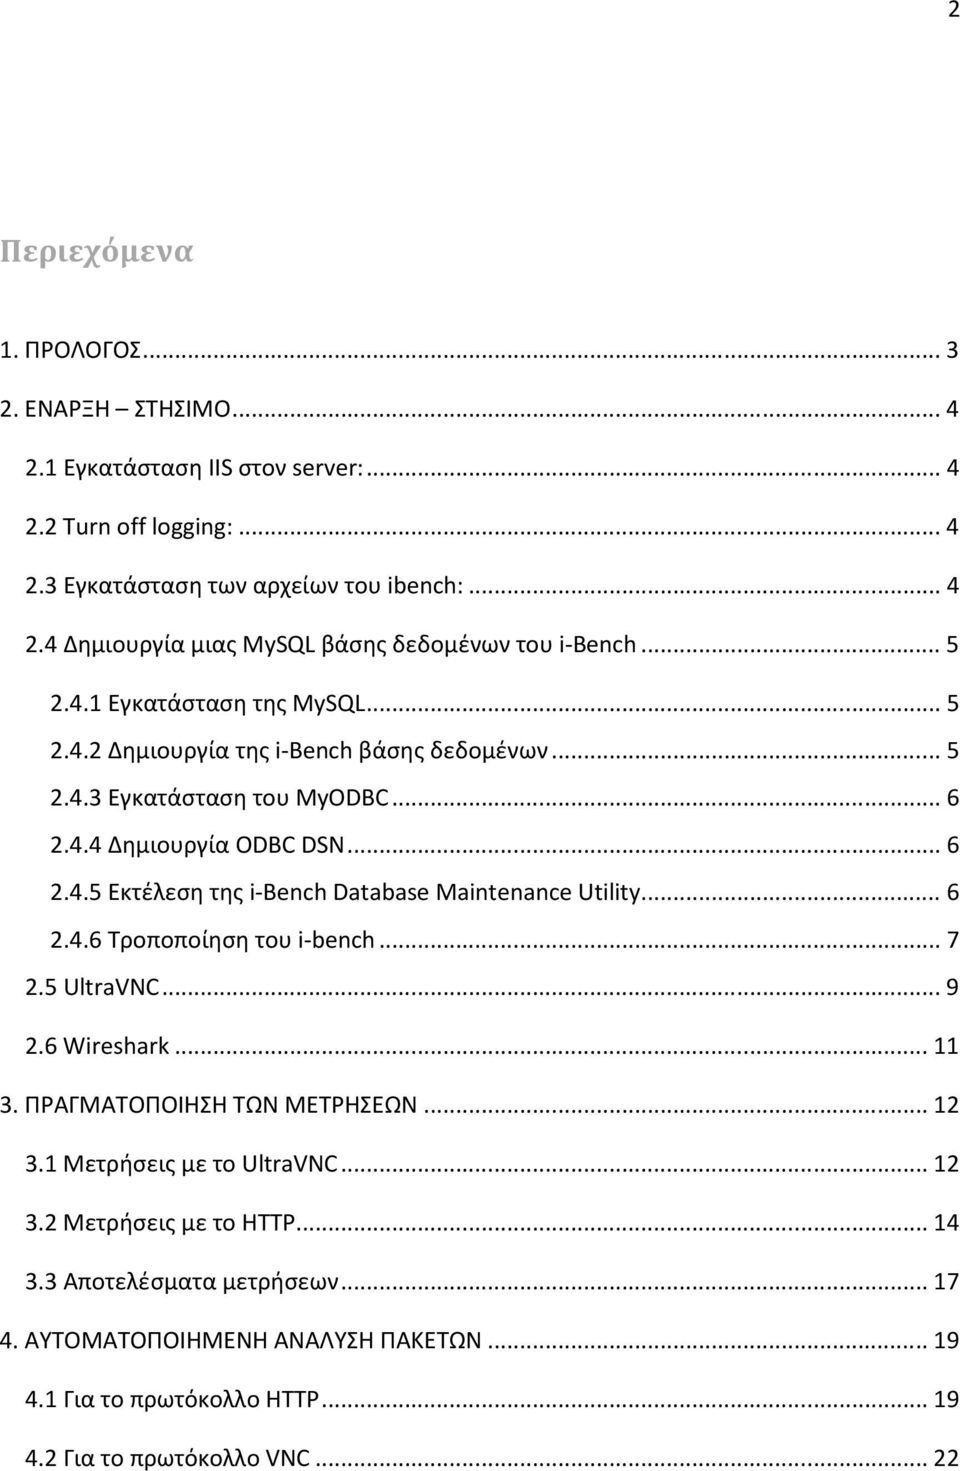 ..6 2.4.6 Τροποποίηση του i-bench...7 2.5 UltraVNC...9 2.6 Wireshark...11 3. ΠΡΑΓΜΑΤΟΠΟΙΗΣΗ ΤΩΝ ΜΕΤΡΗΣΕΩΝ...12 3.1 Μετρήσεις με το UltraVNC...12 3.2 Μετρήσεις με το HTTP...14 3.